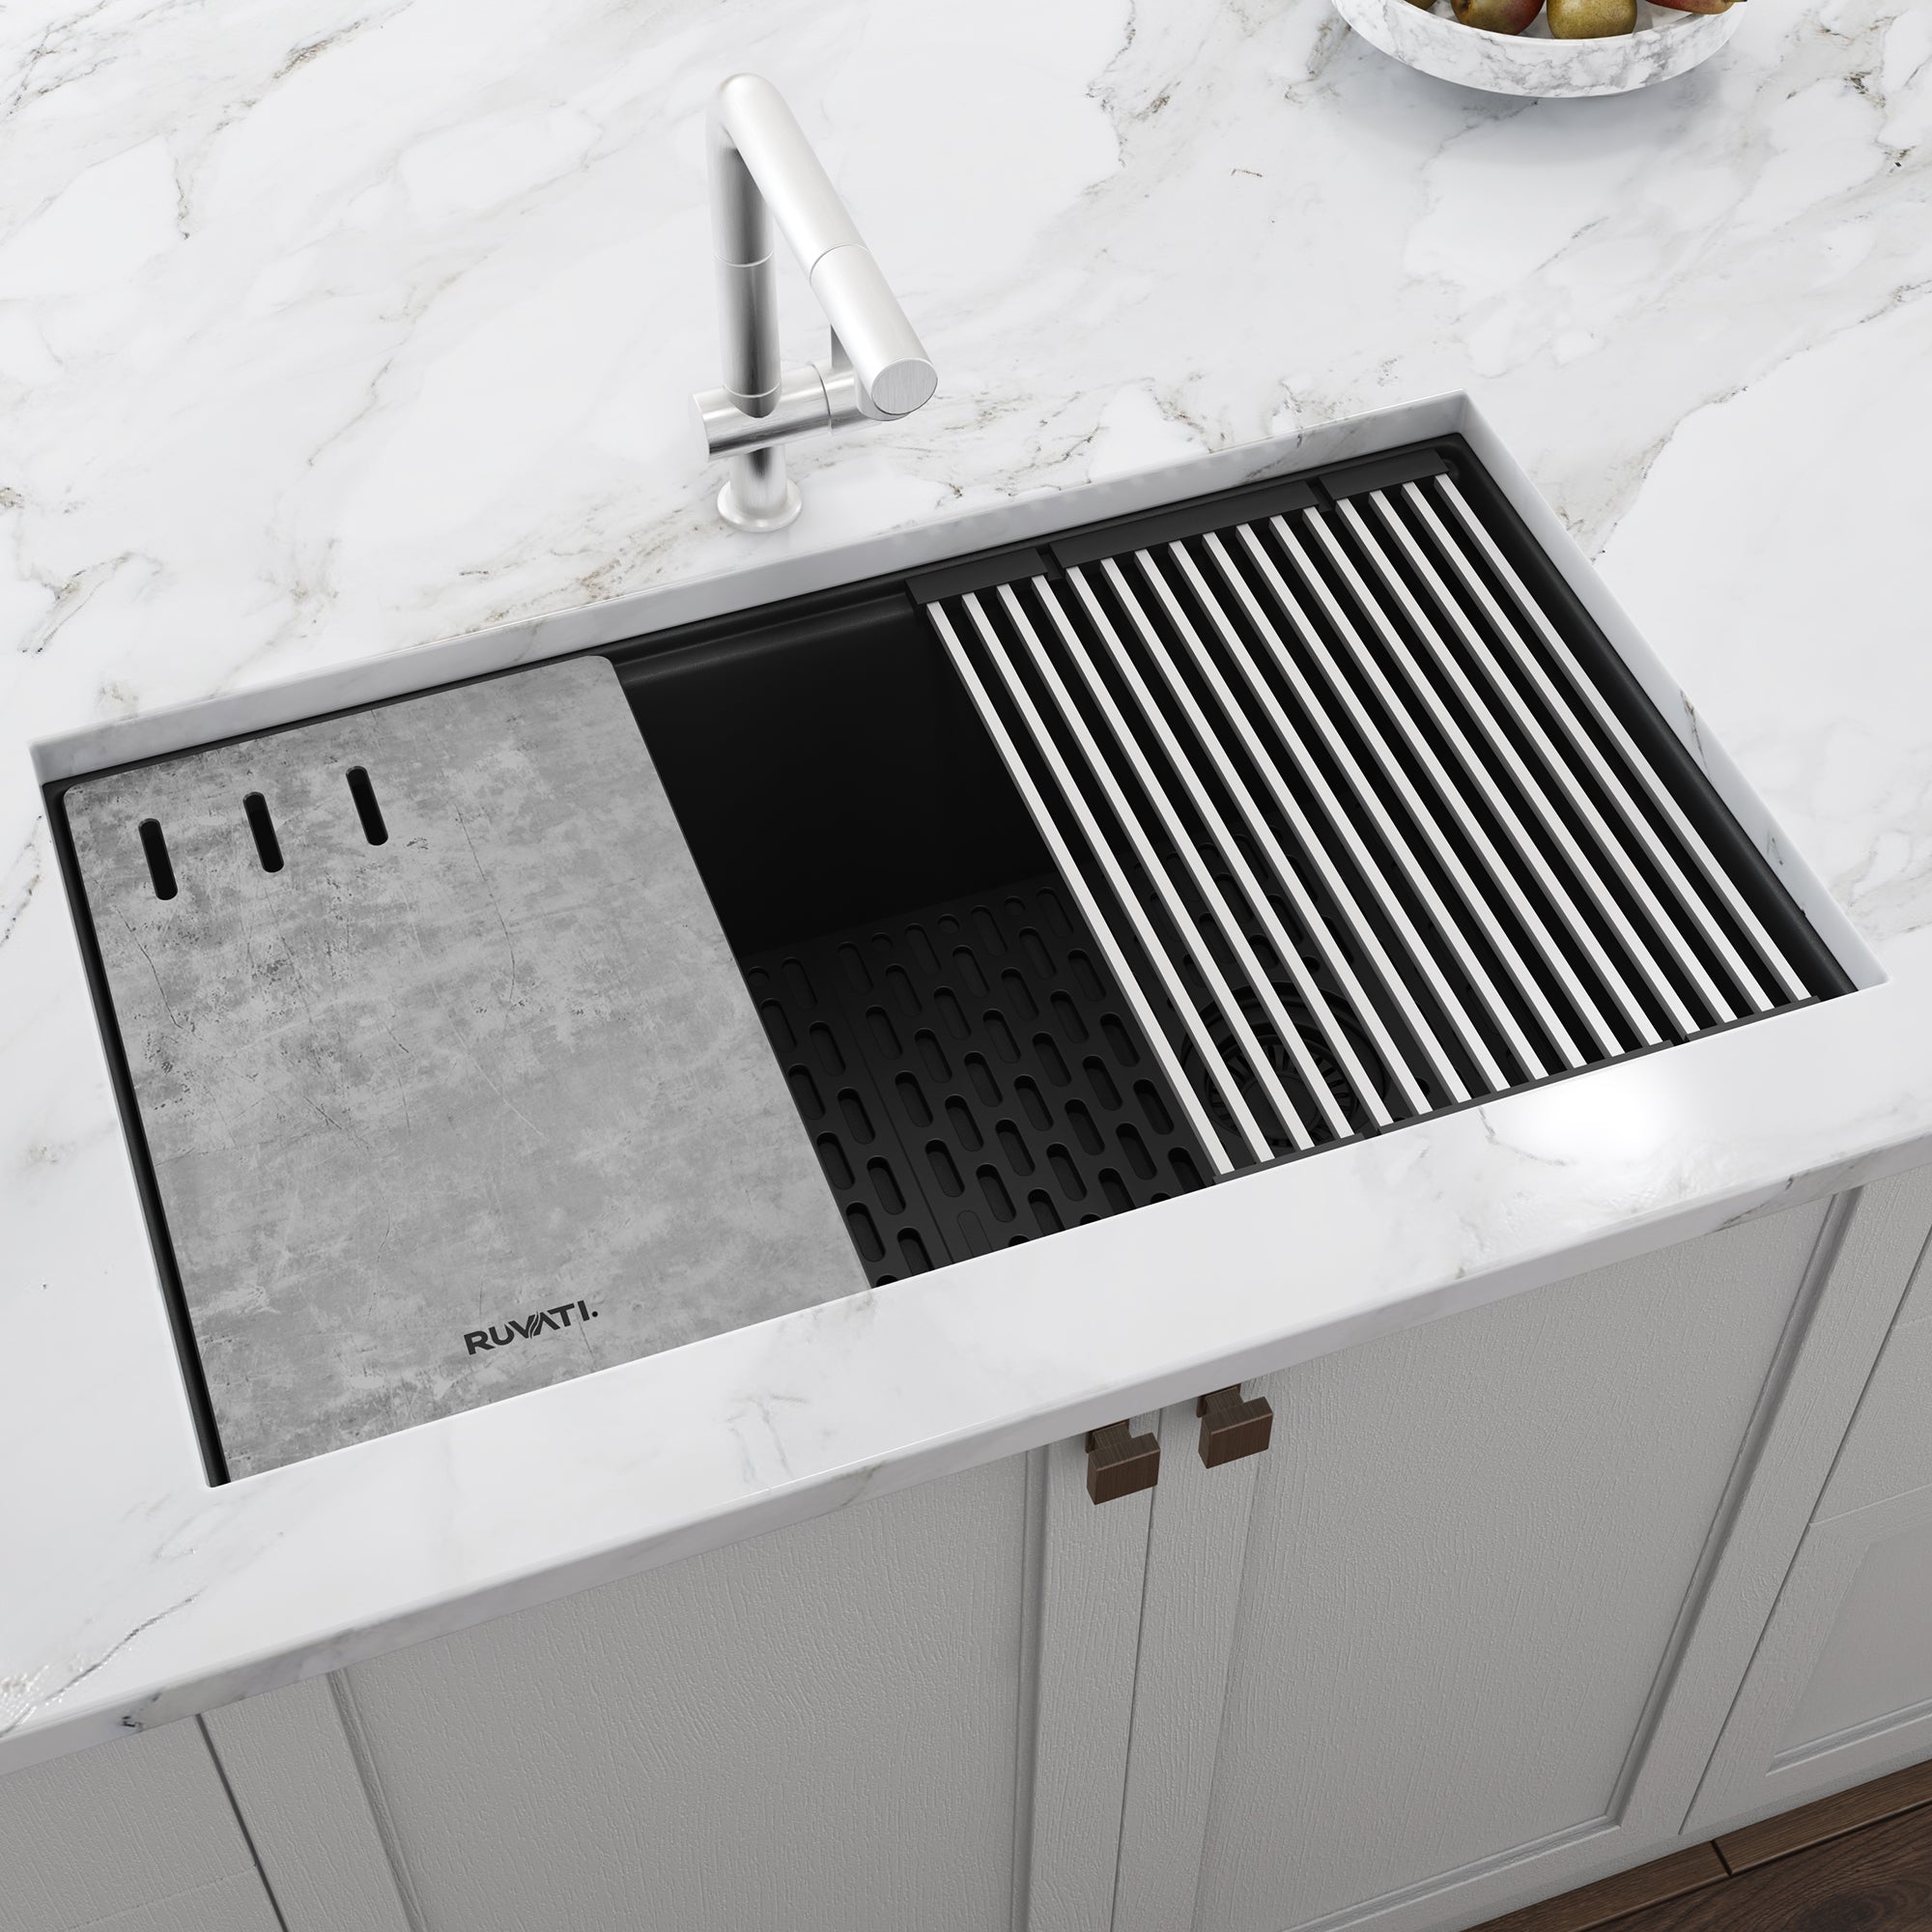 Ruvati 33-inch Undermount Workstation Granite Composite Kitchen Sink Matte Black